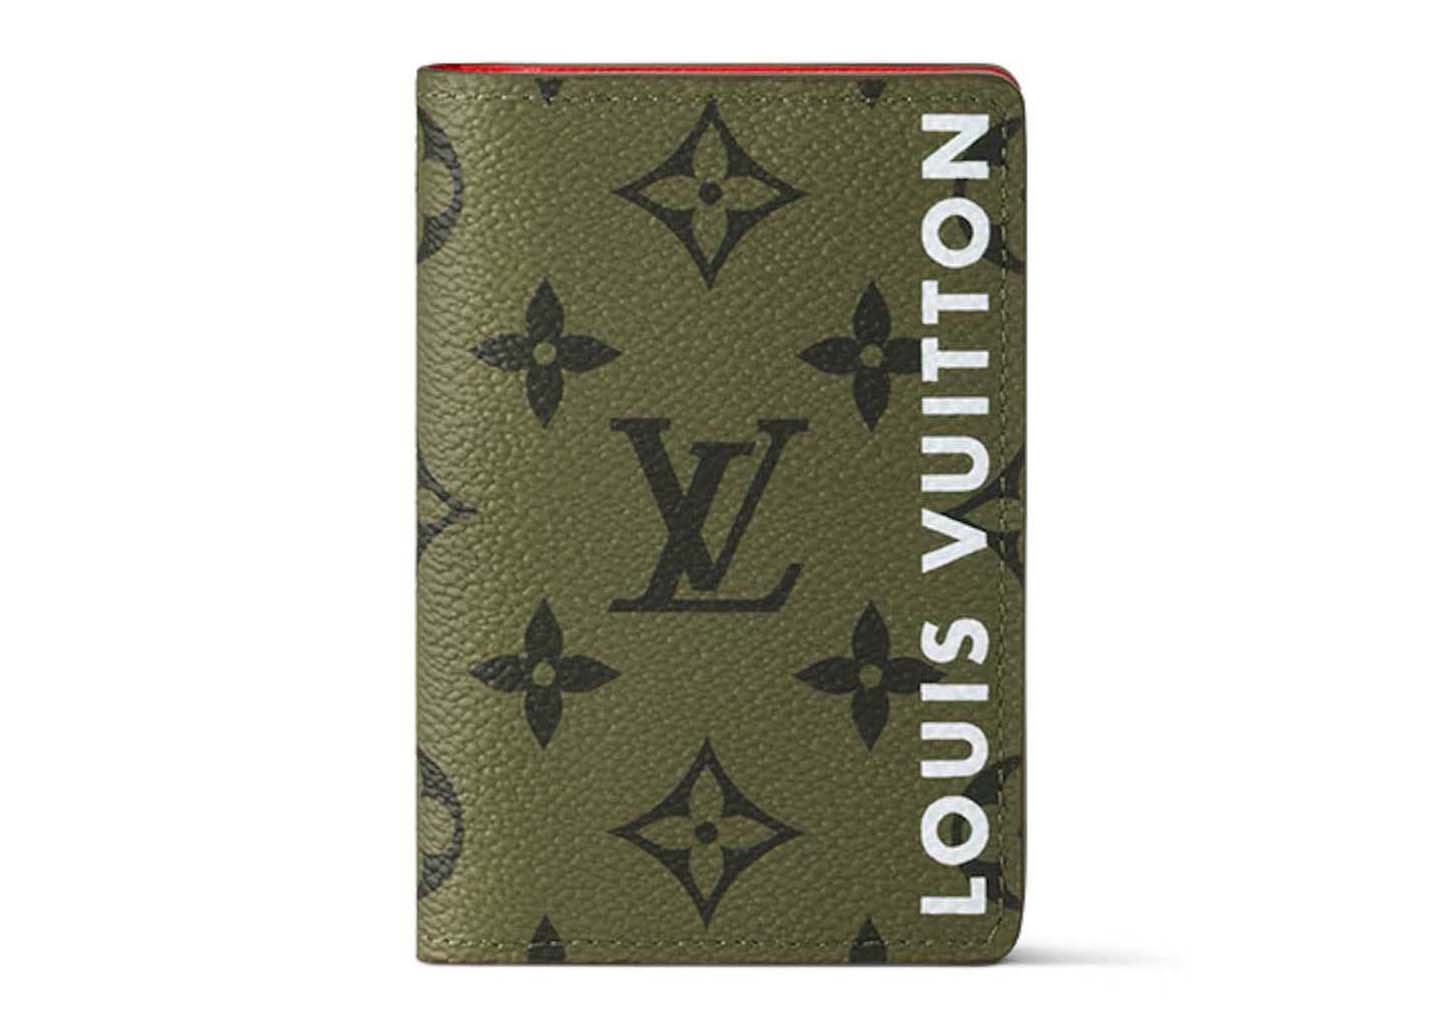 Louis Vuitton Pocket Organizer Khaki Green/Vermillion Red in 